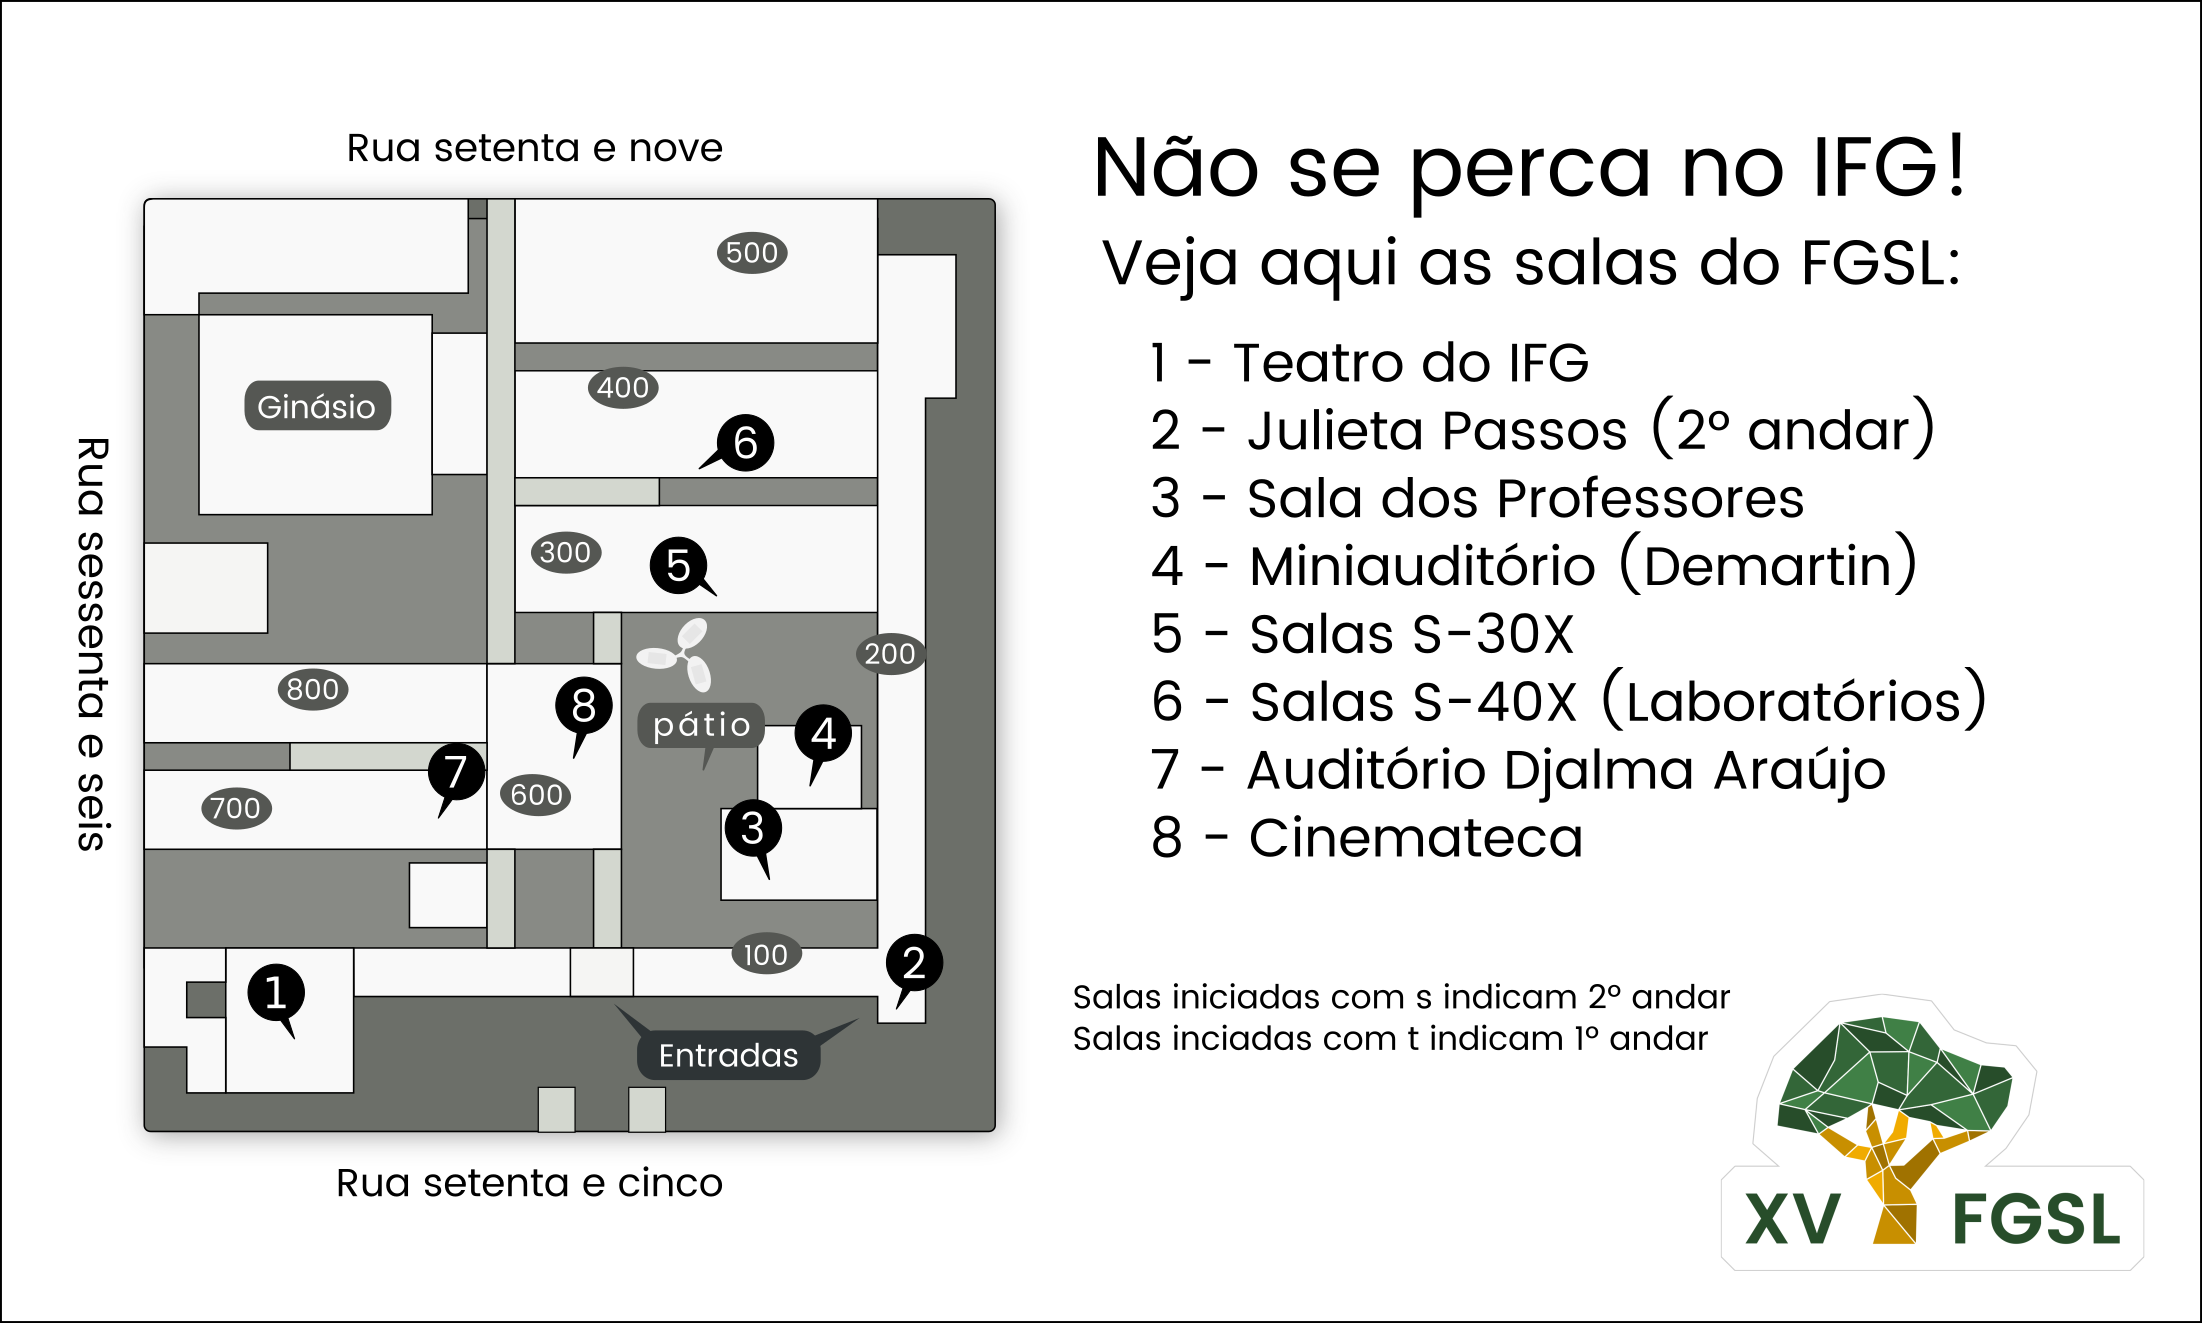 Imagem com Mapa Interno do IFG, mostrando a localização das salas.